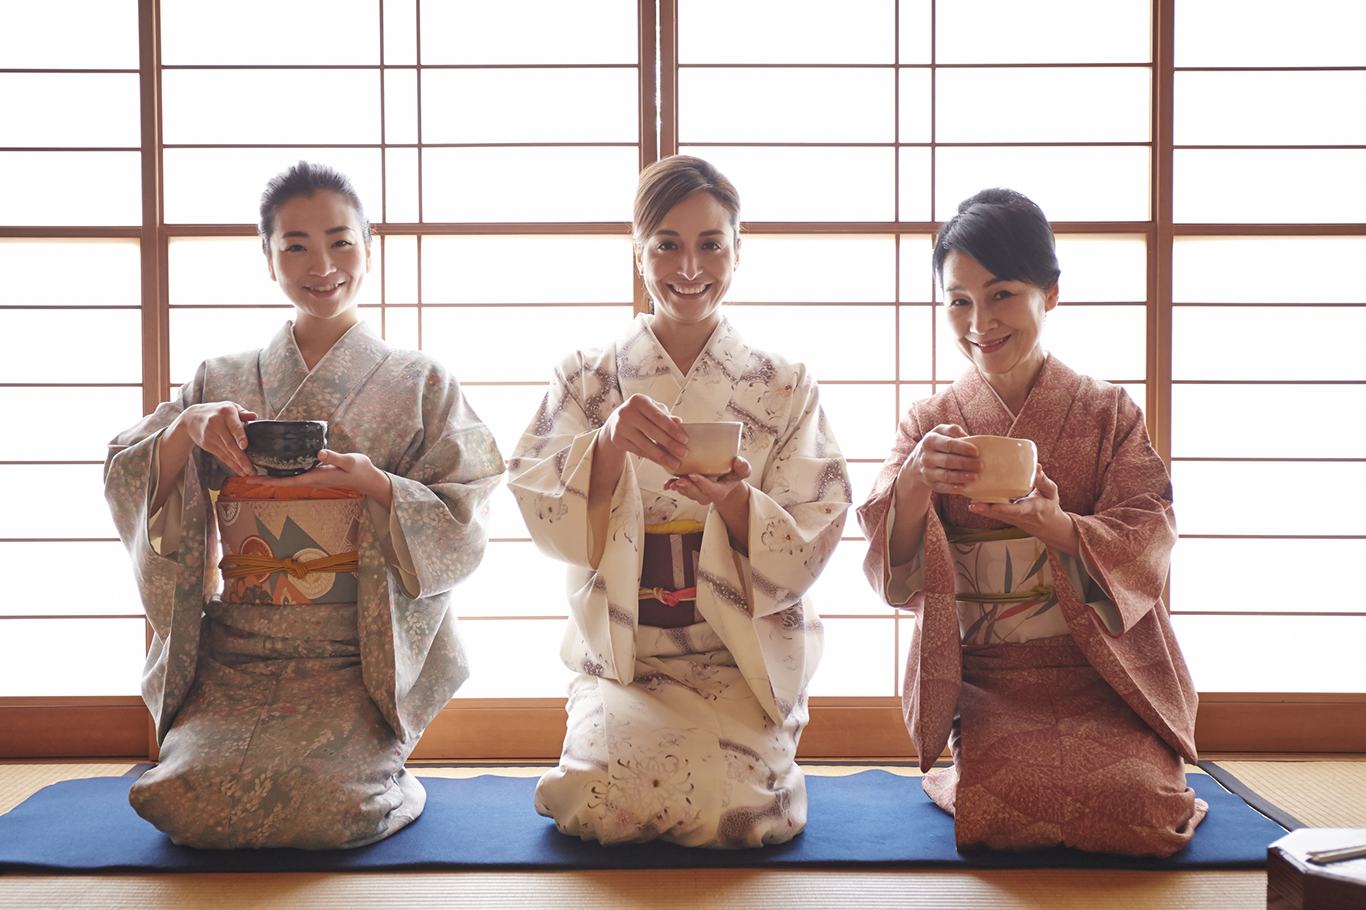 Tapasztalja meg a tea-ünnepséget Osaka egyik kimonójával